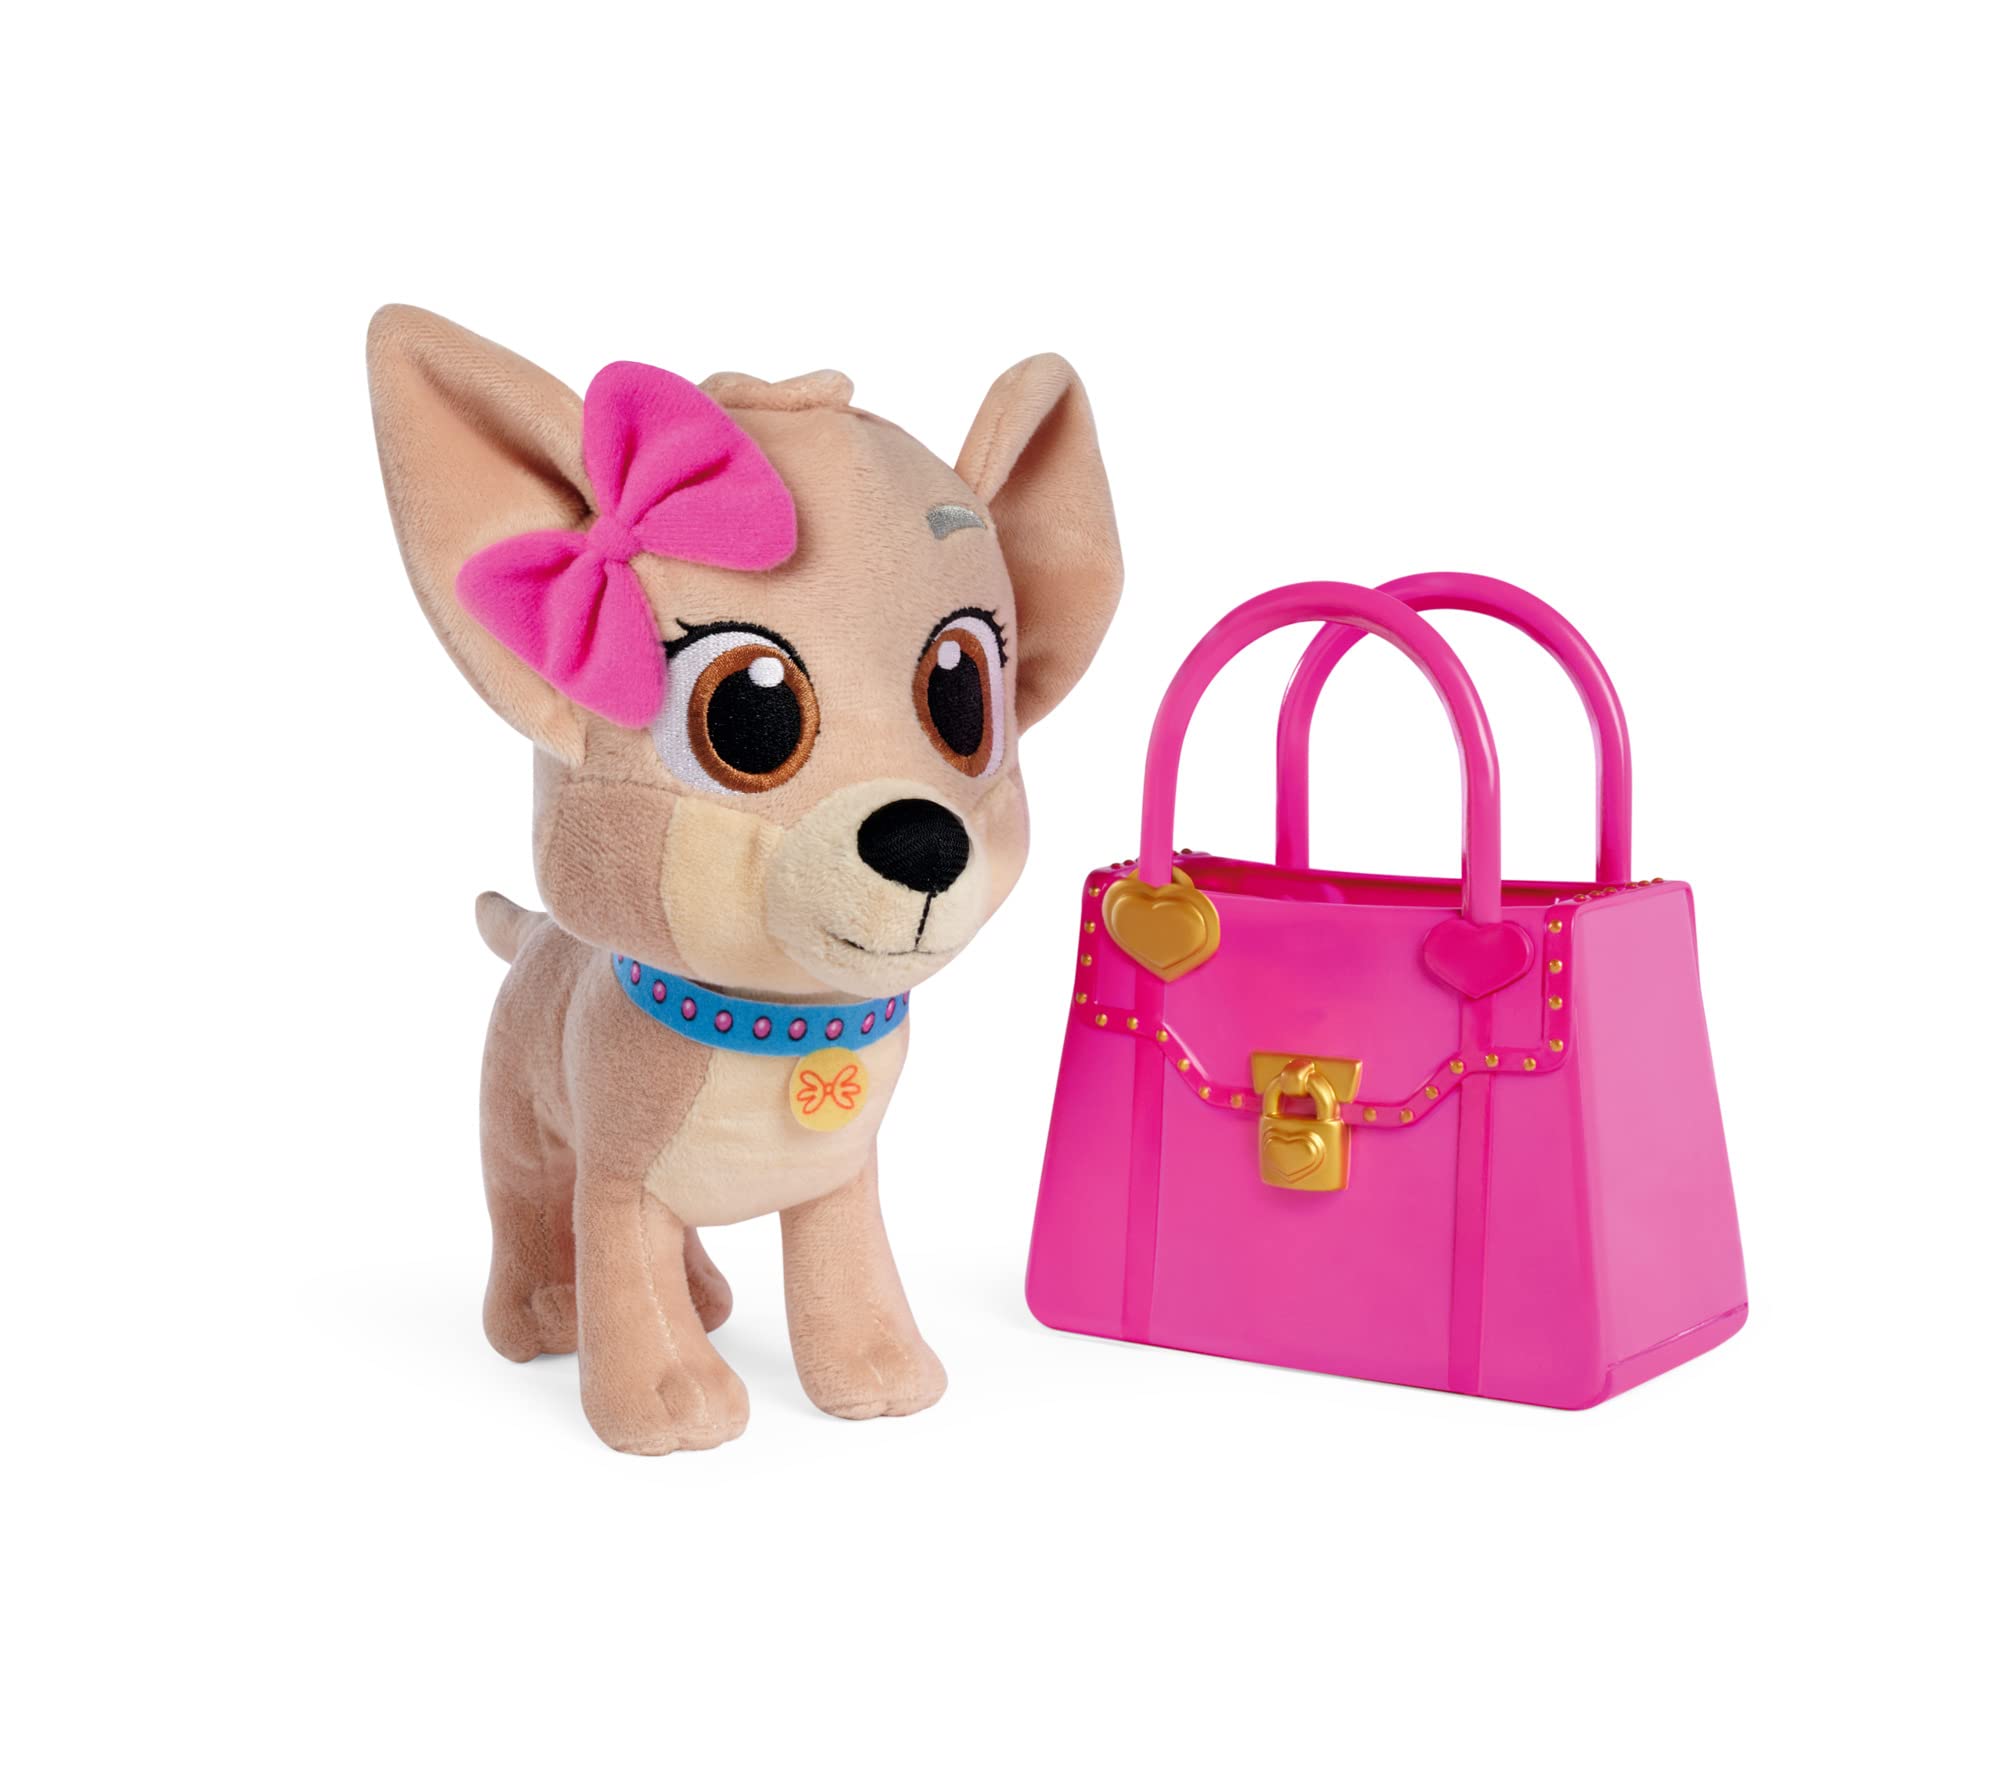 Simba 105890020 - ChiChi Love Best Friends Forever, Youtube Serie Plüschhund in Hot-Pinker Vinyl Handtasche, 20cm Kuschelhund, ab 3 Jahren